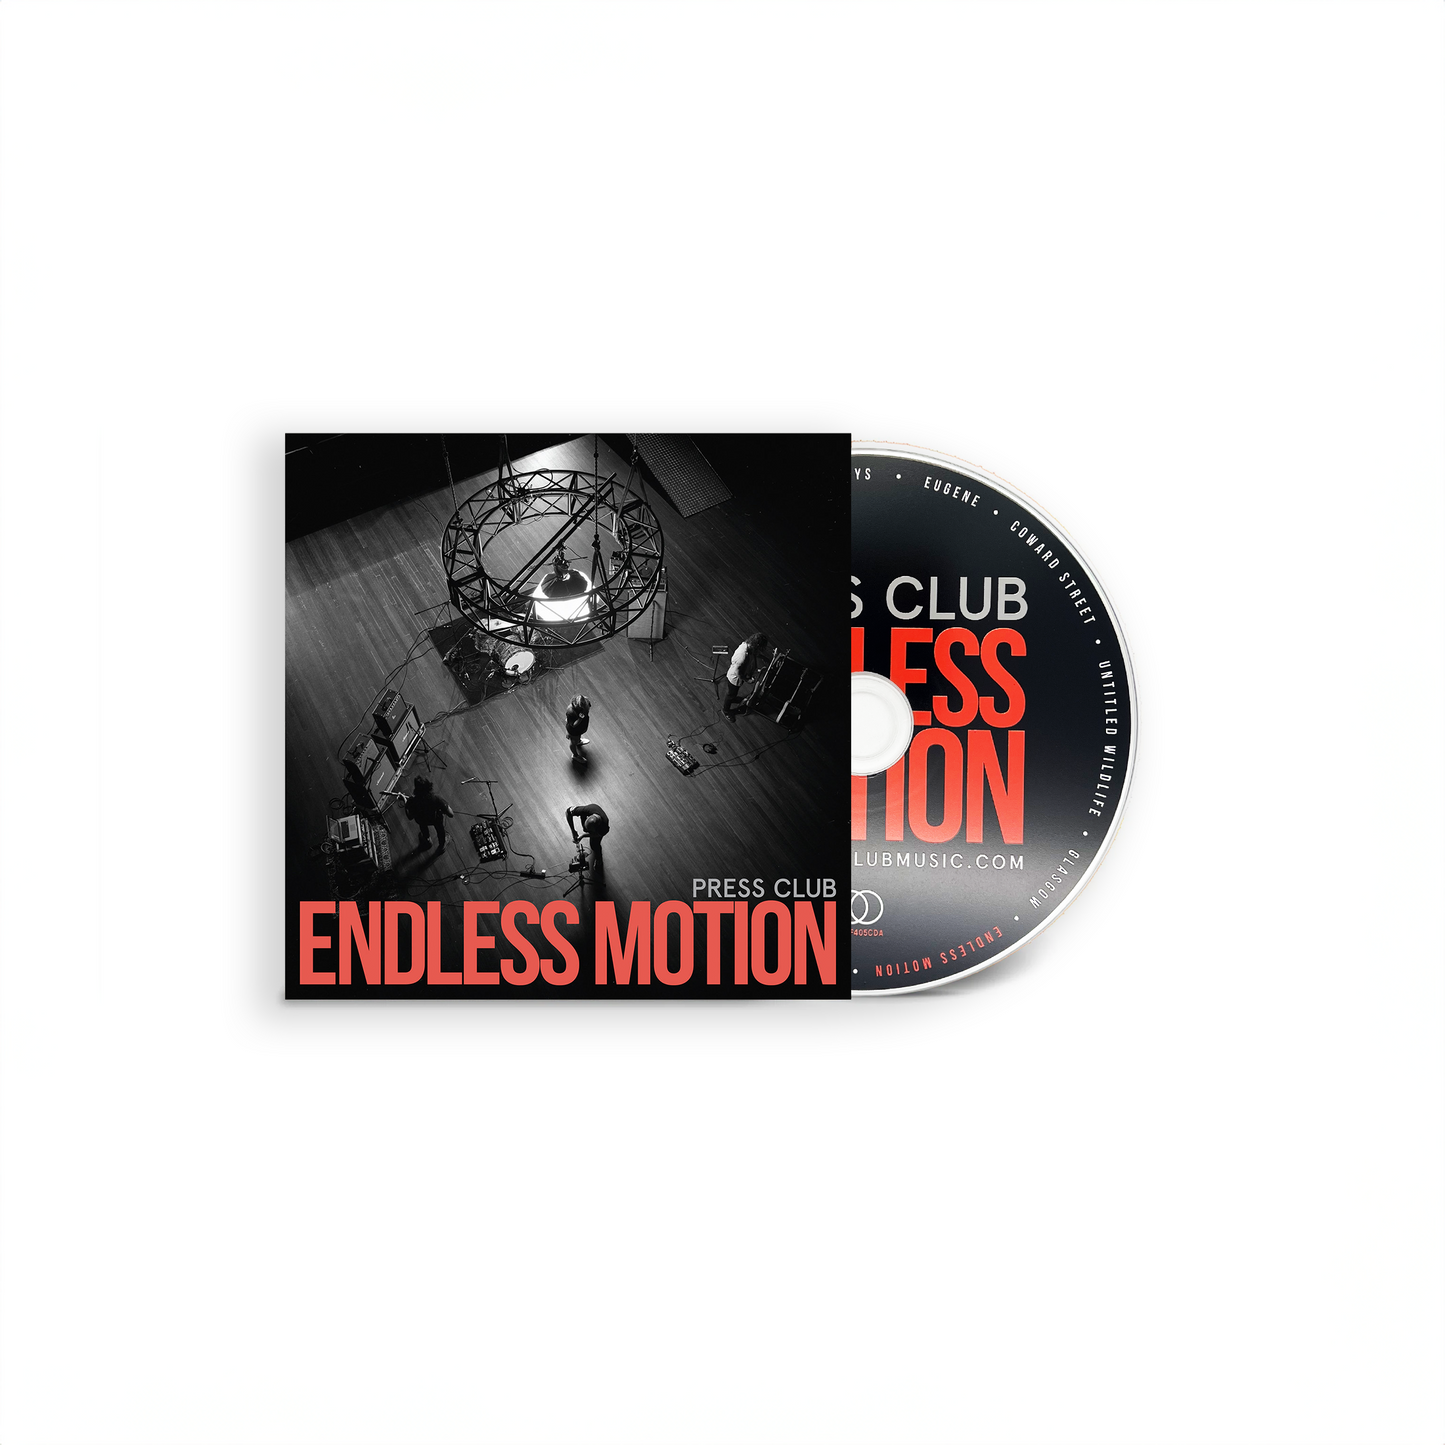 Press Club 'Endless Motion'